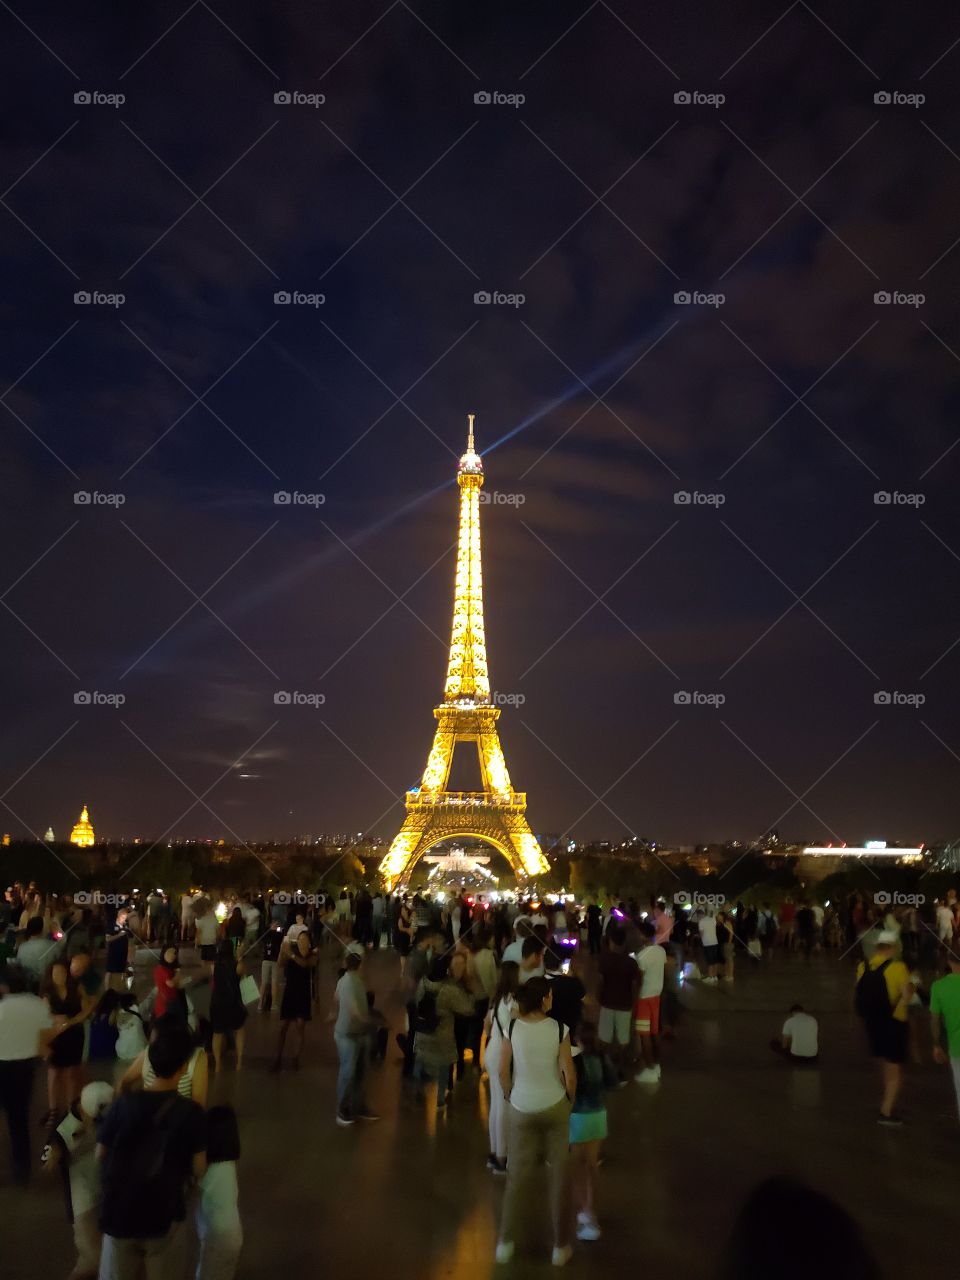 París se ilumina junto con sus importantes monumentos